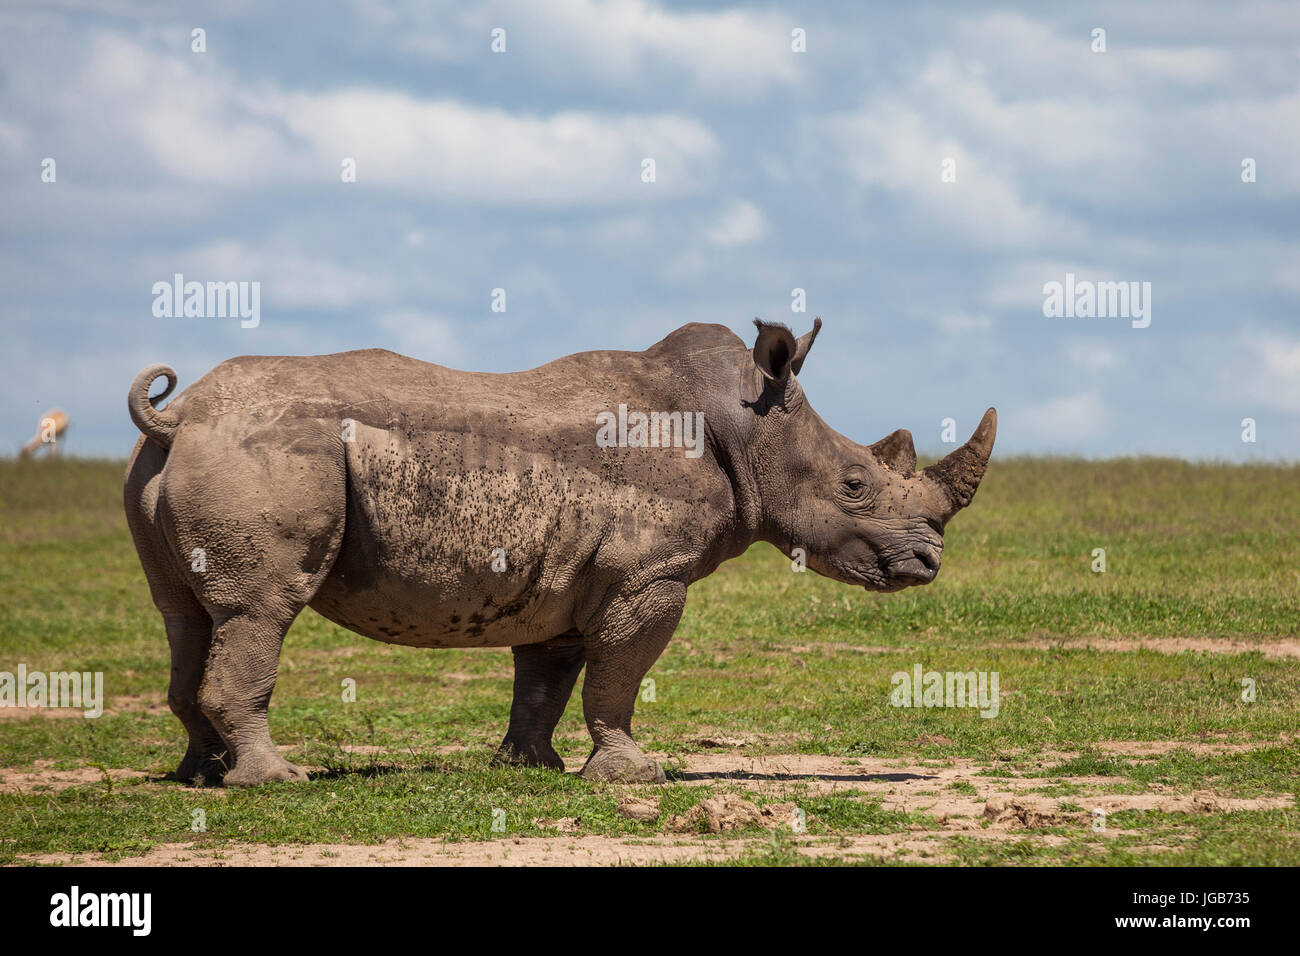 White rhino, Solio game ranch, Kenya. Stock Photo